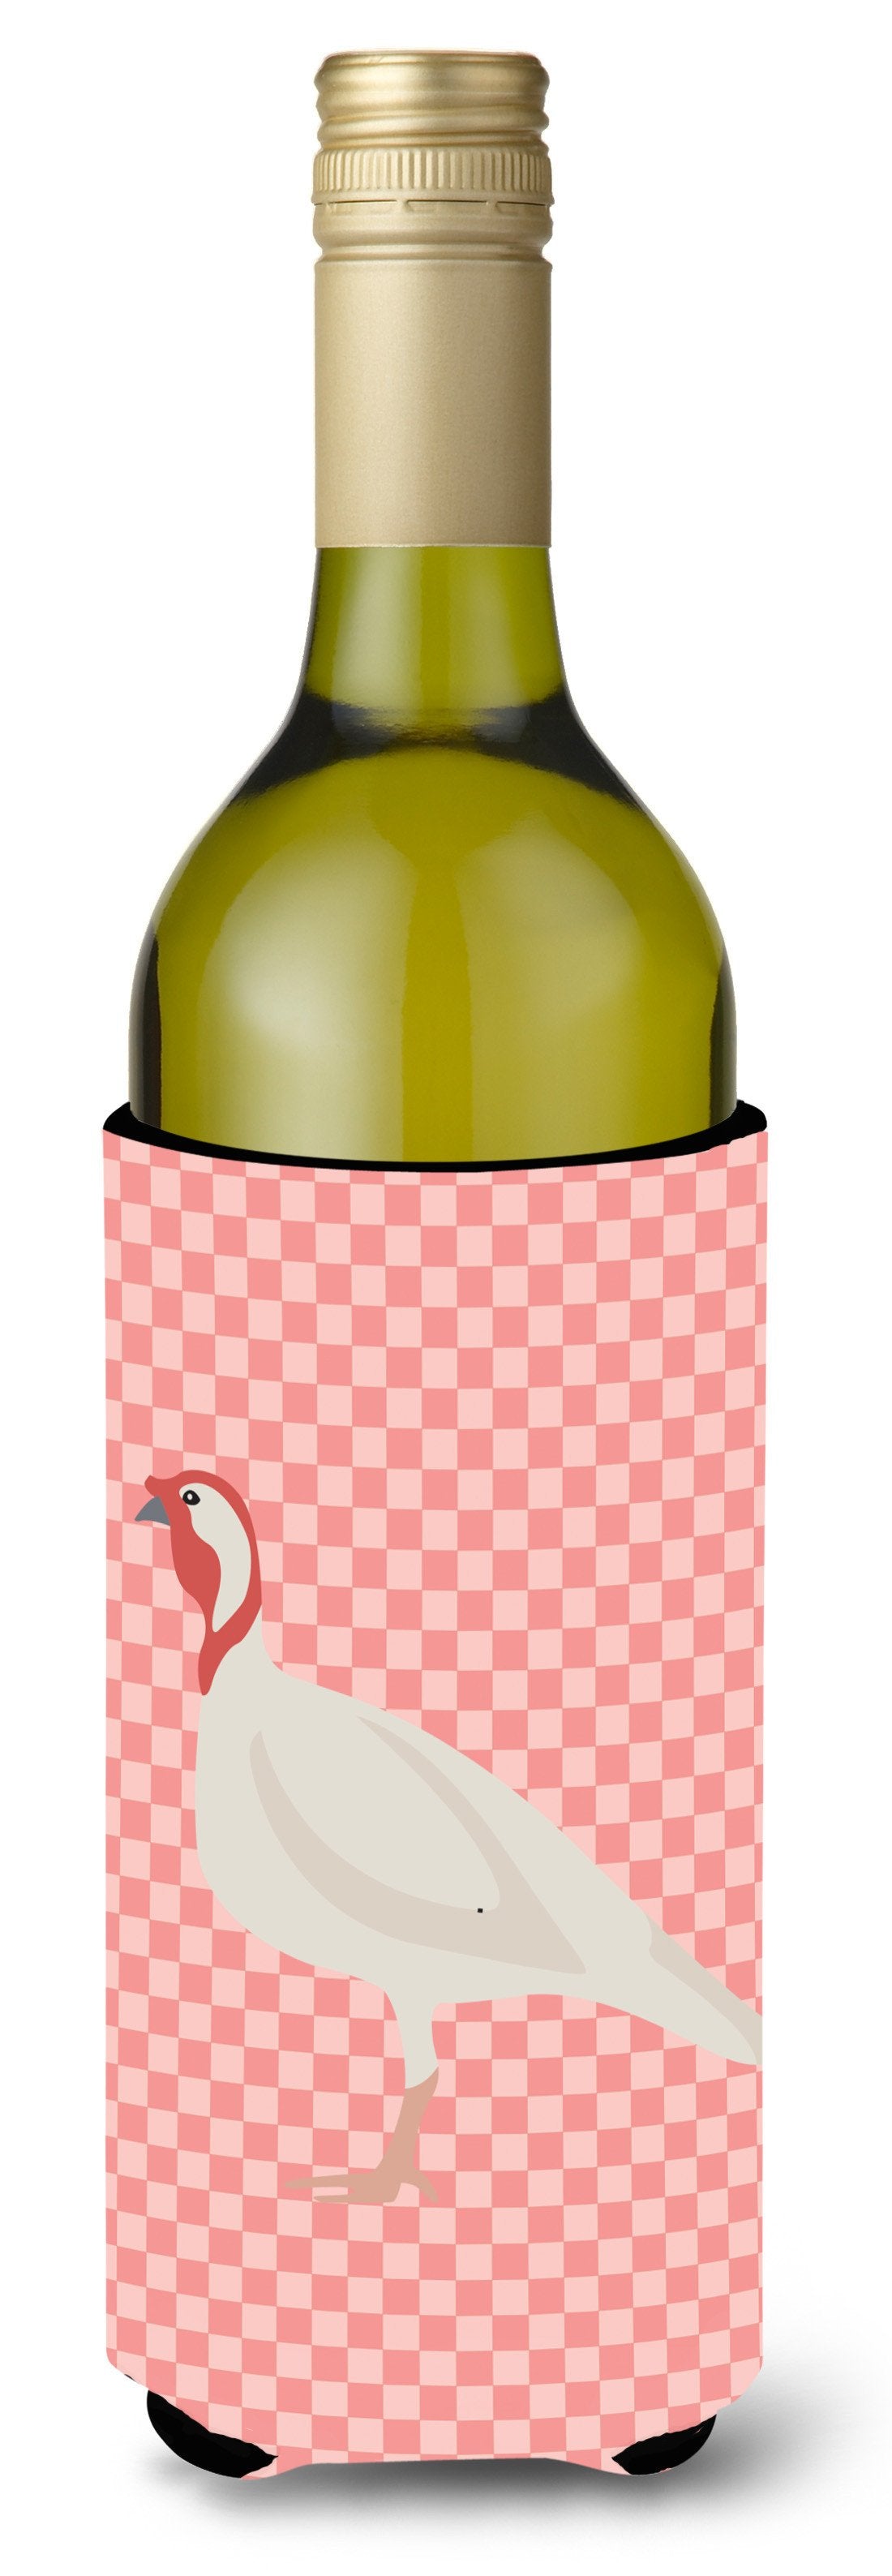 Beltsville Small White Turkey Hen Pink Check Wine Bottle Beverge Insulator Hugger BB7989LITERK by Caroline's Treasures